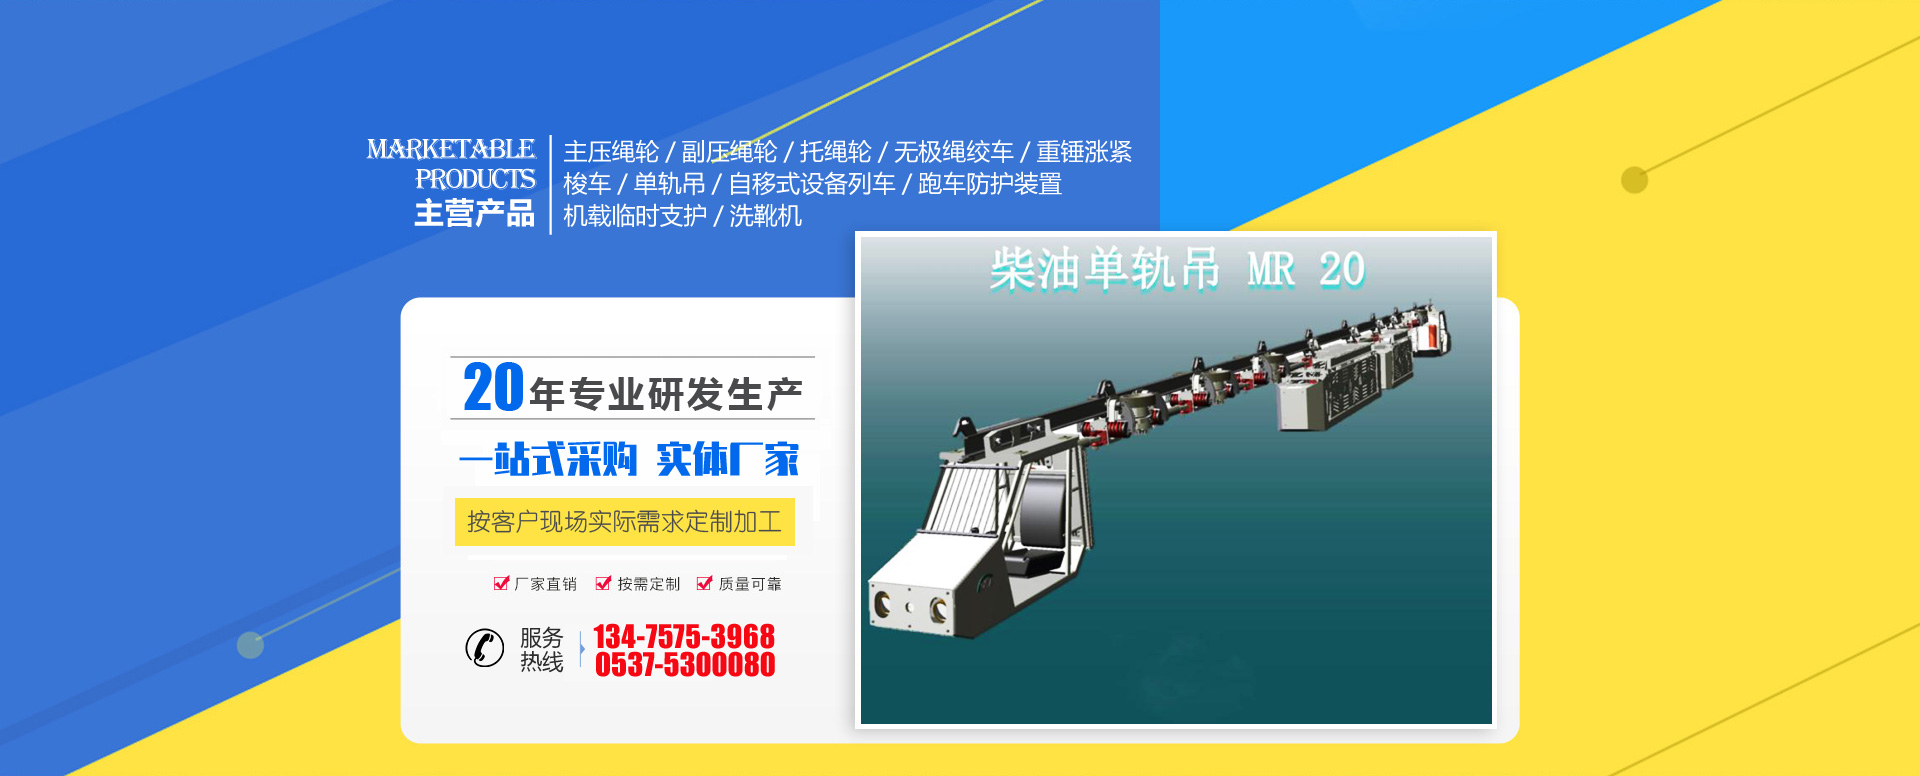 环球体育平台(中国)有限公司轨道装备制造